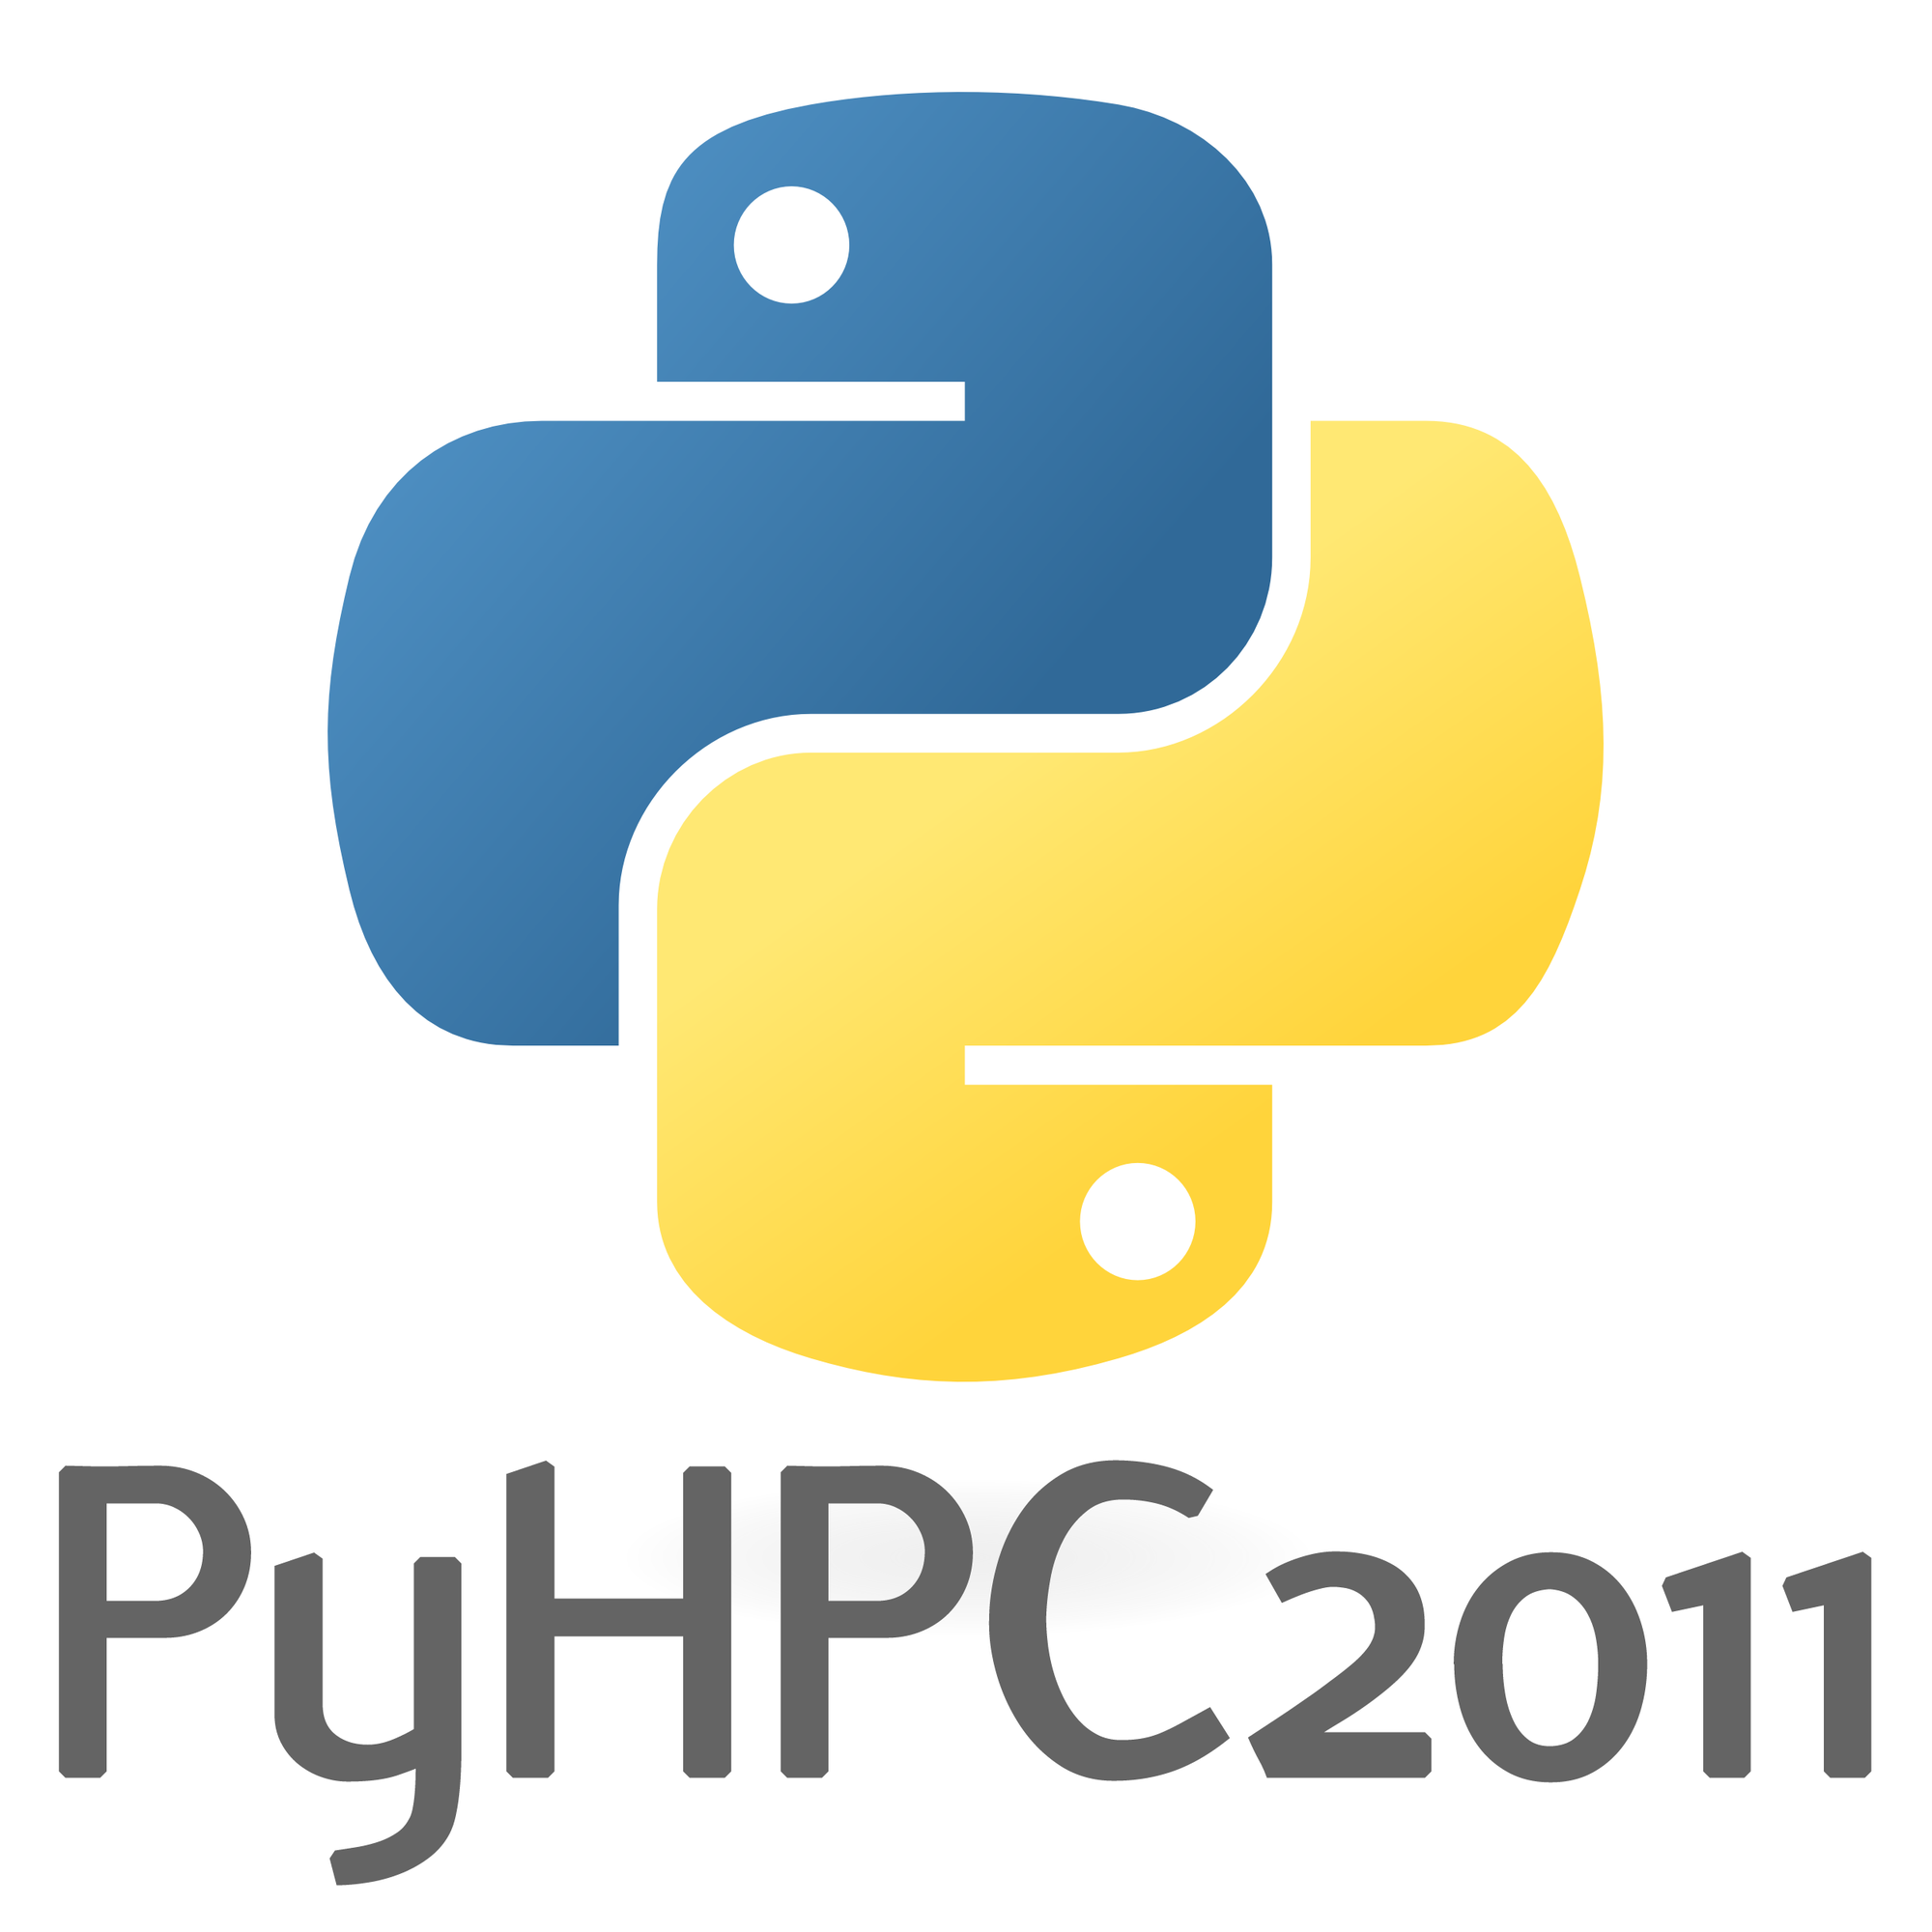 PyHPC2011